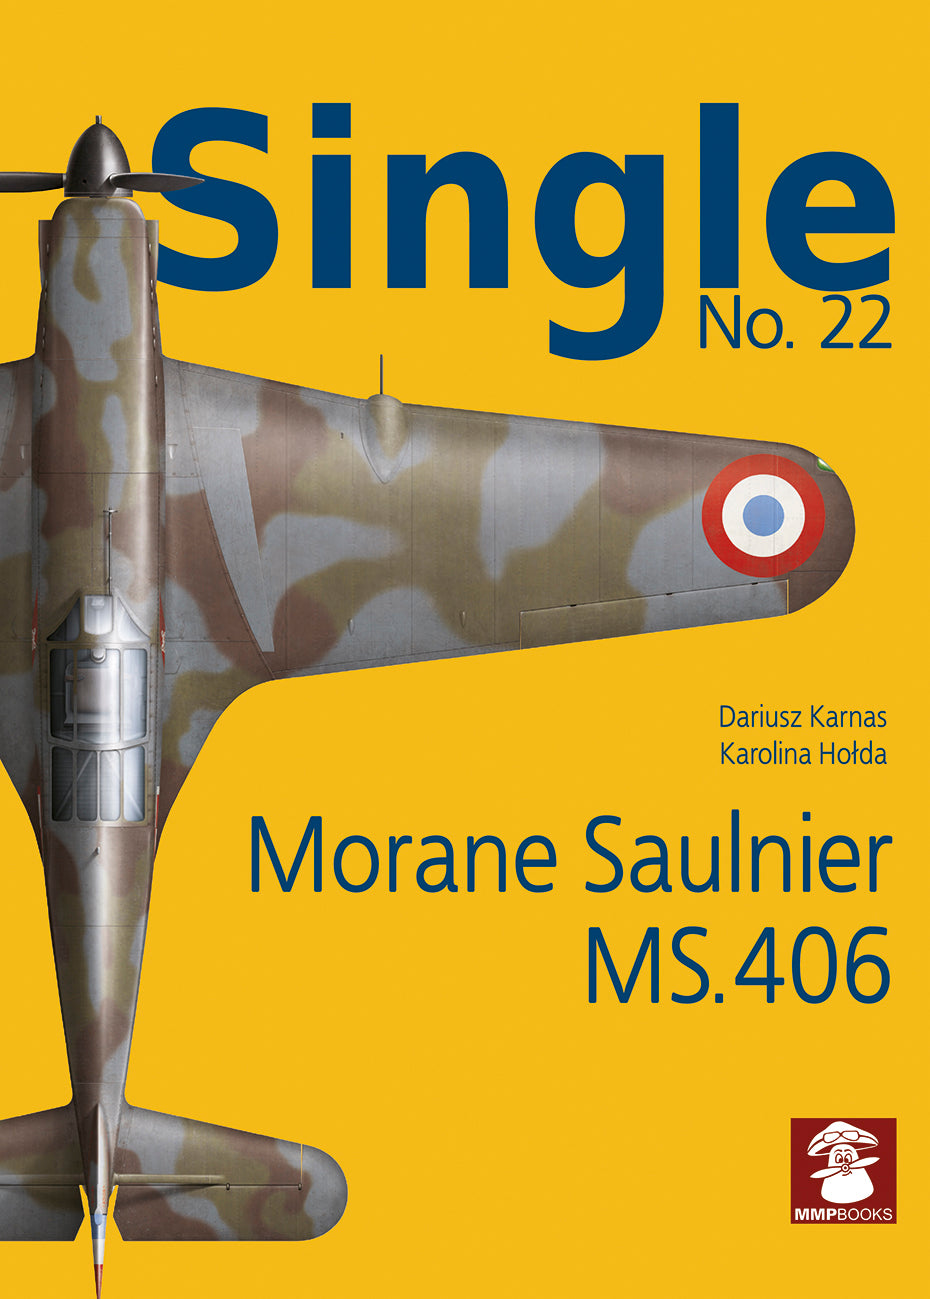 Morane Saulnier MS.406